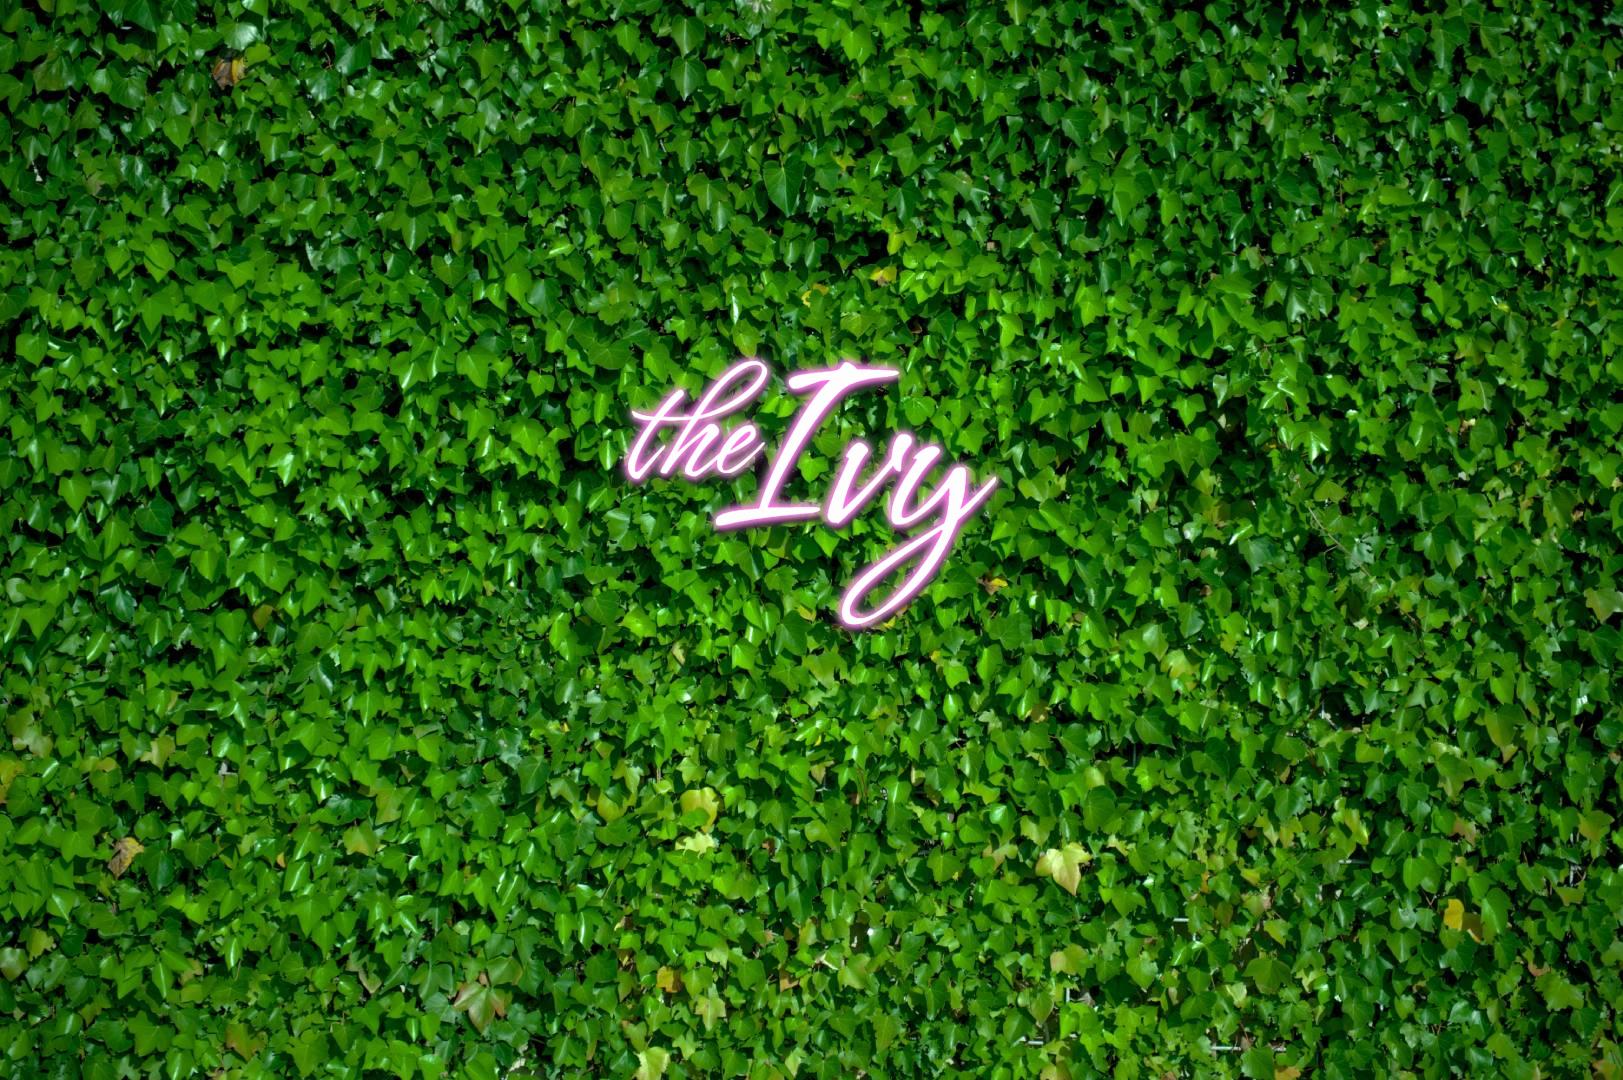 The Ivy hero